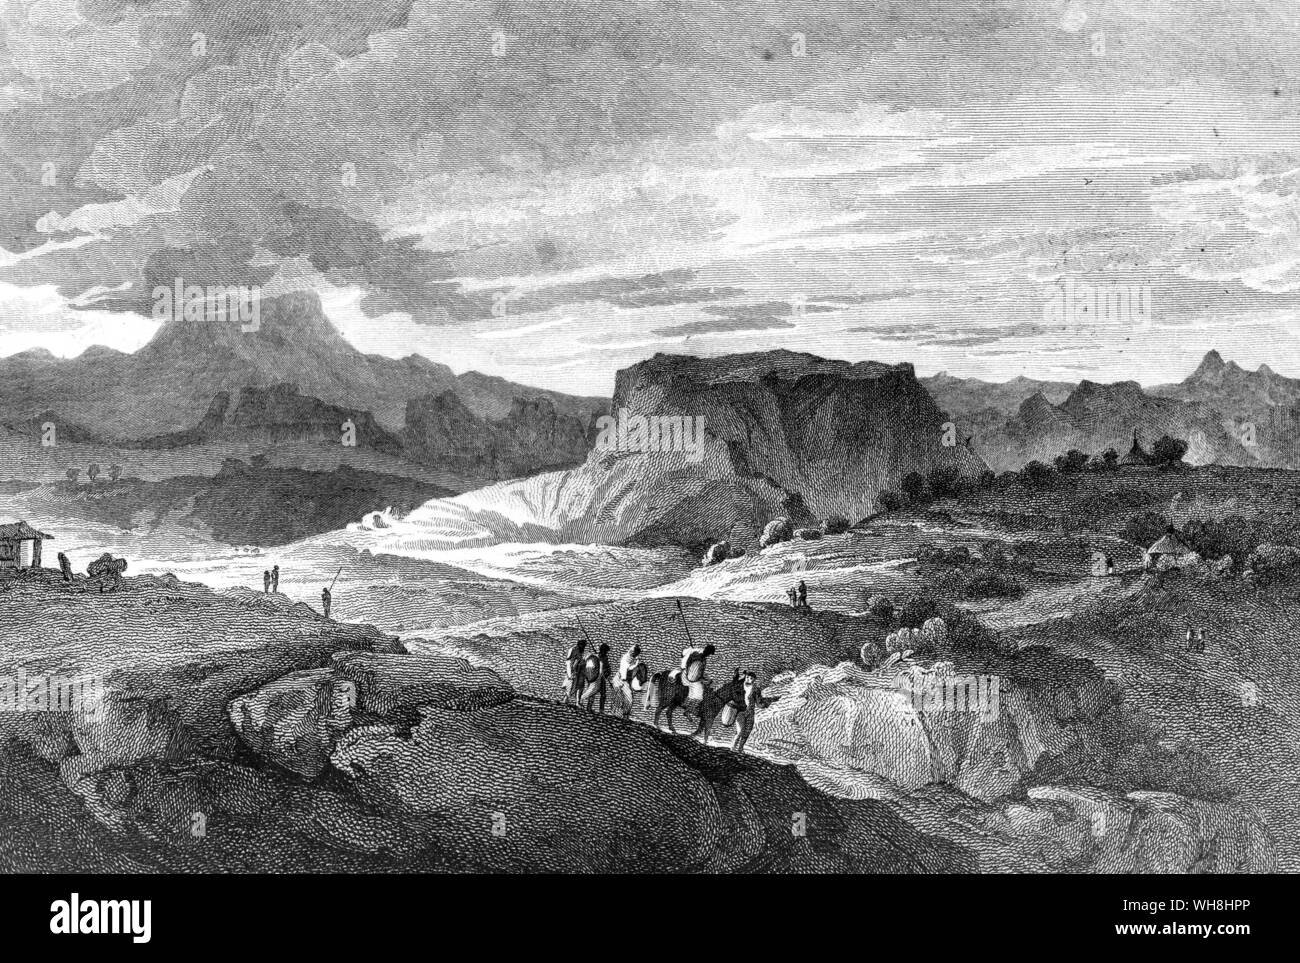 Blick auf die Berge oder Amba von Debra Damo, bei dem einer der Äthiopischen zahlreiche Festung - wie Klöster gebaut wurde. Die African Adventure - eine Geschichte von Afrikas Entdecker von Timothy Severin Seite 36. Stockfoto